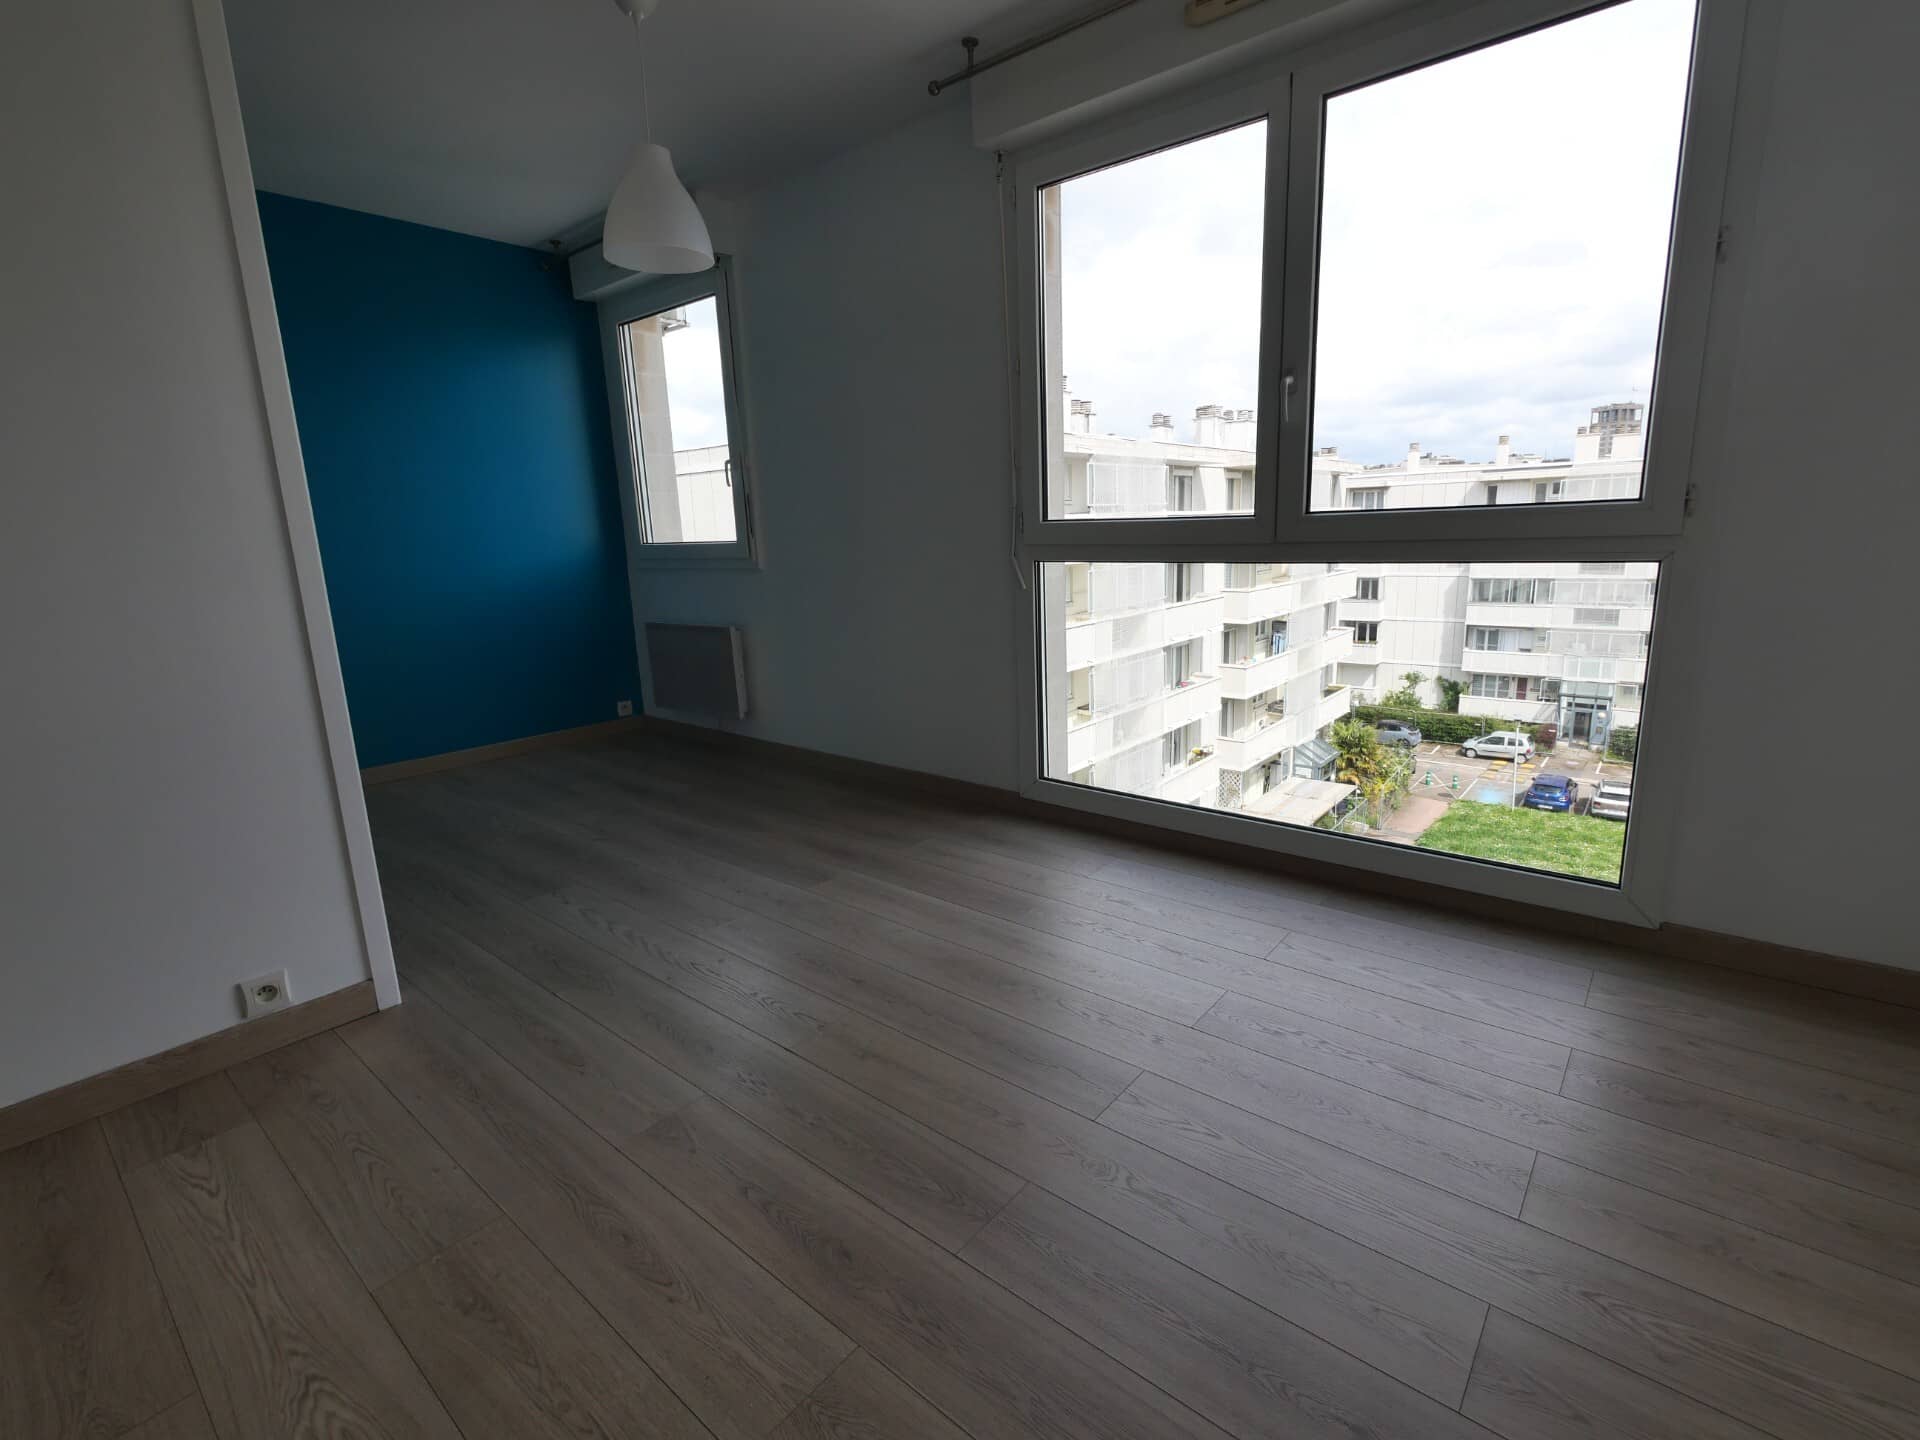 Annonce immobilière en location Appartement type F1 Le Havre 194